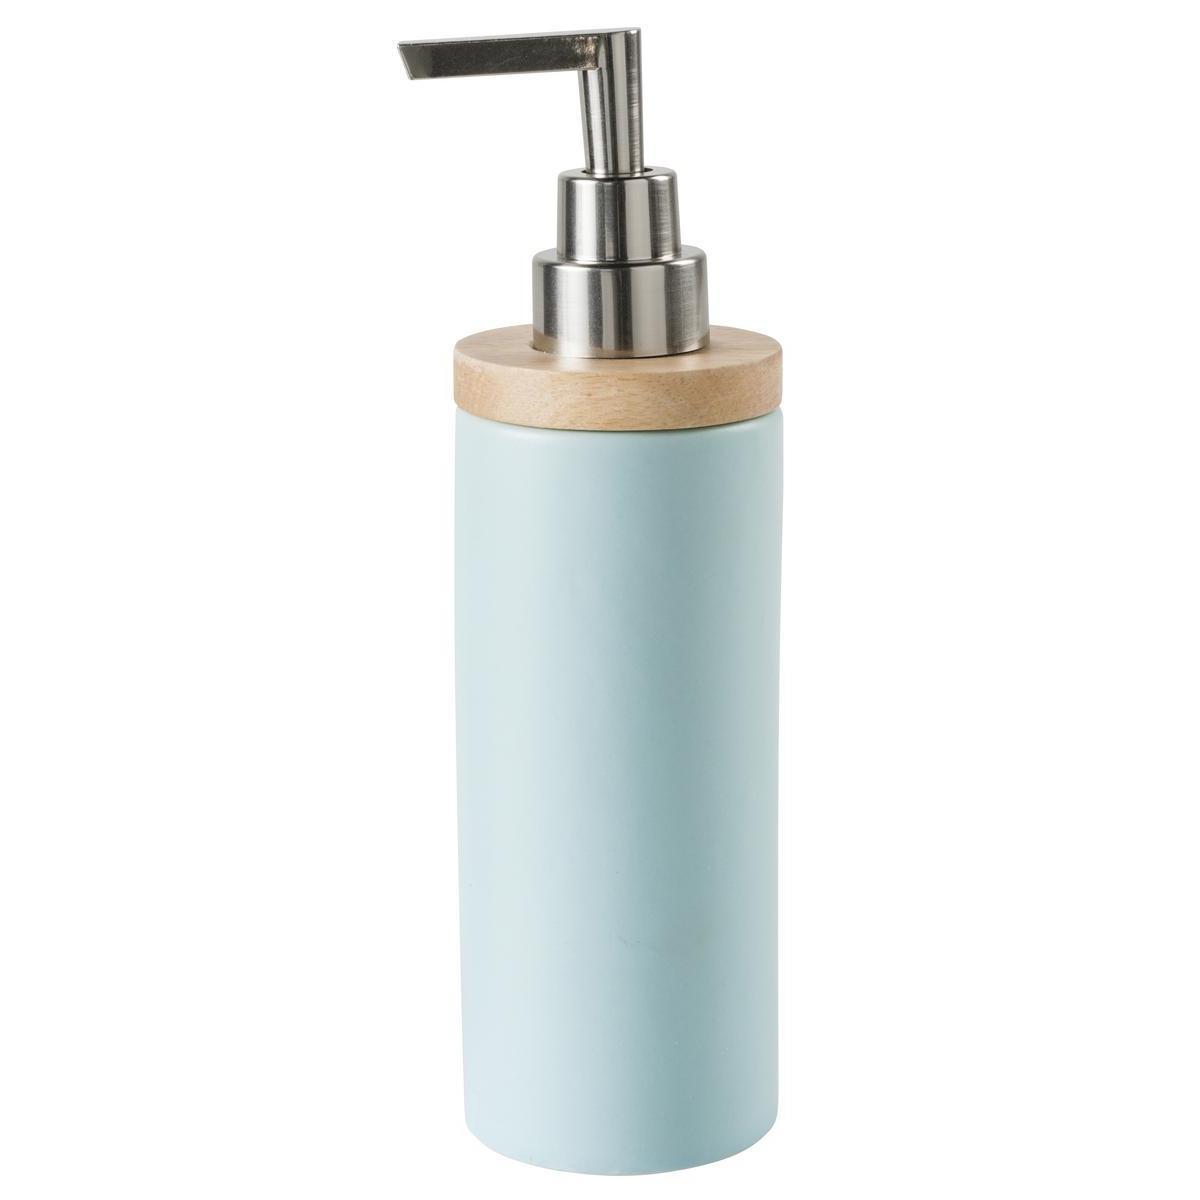 Distributeur de savon - Céramique et bambou - Ø 6,2 x H 21 cm - Bleu